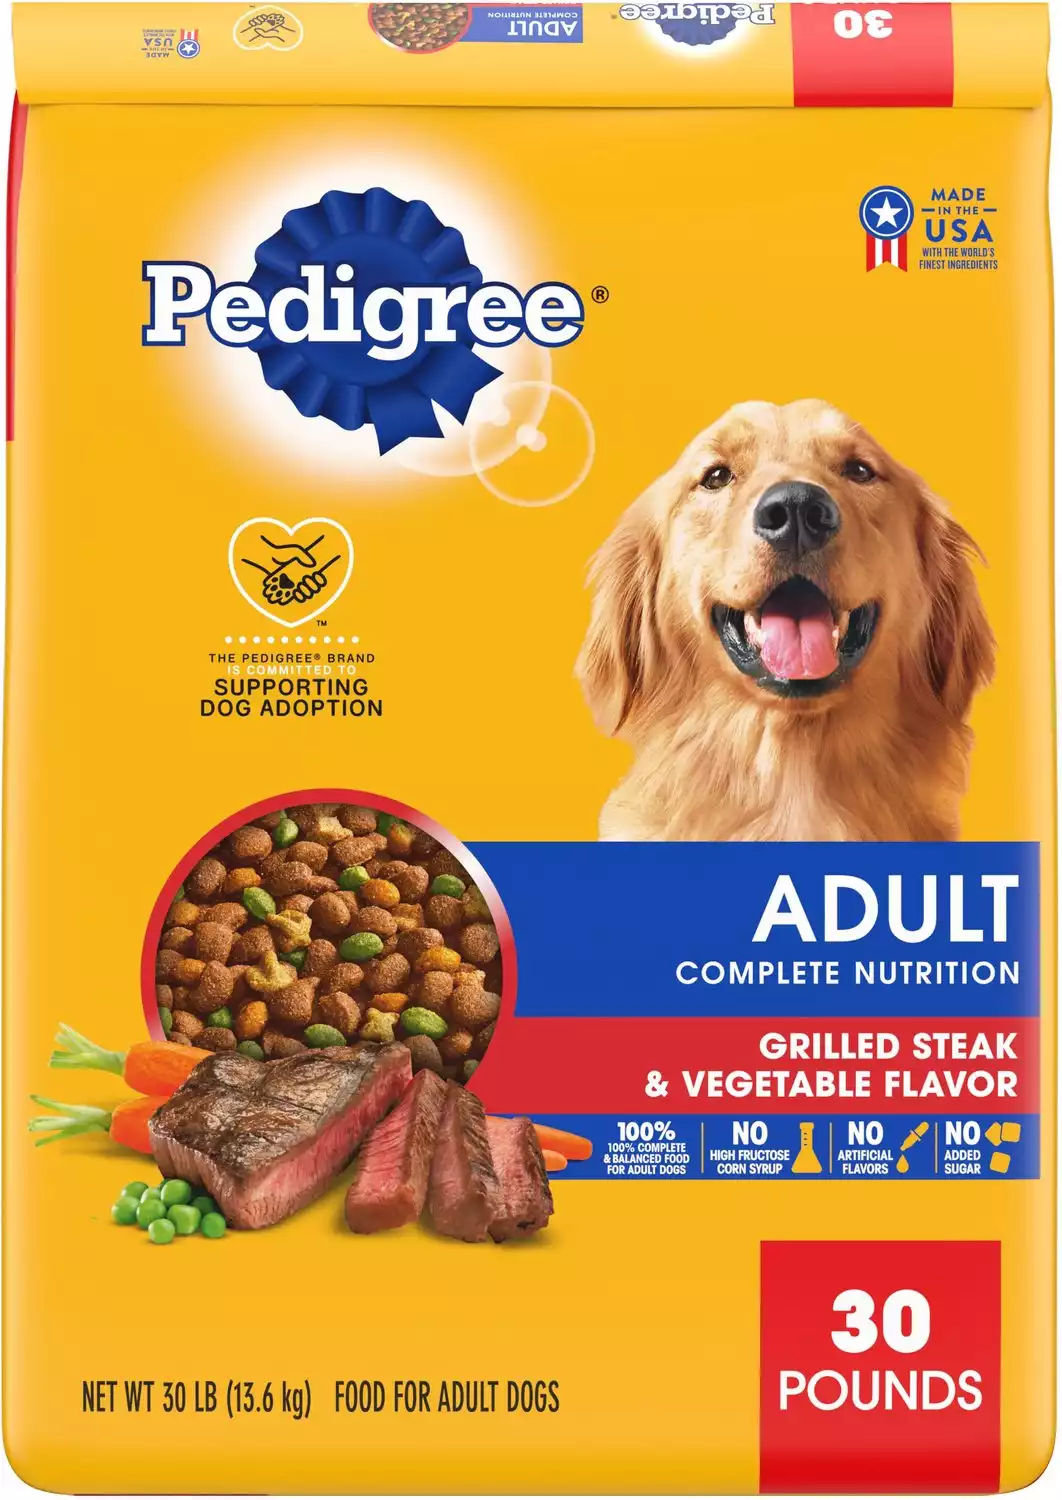 Pedigree complete nutrition grilled steak & vegetable flavor dog kibble adult dry dog food